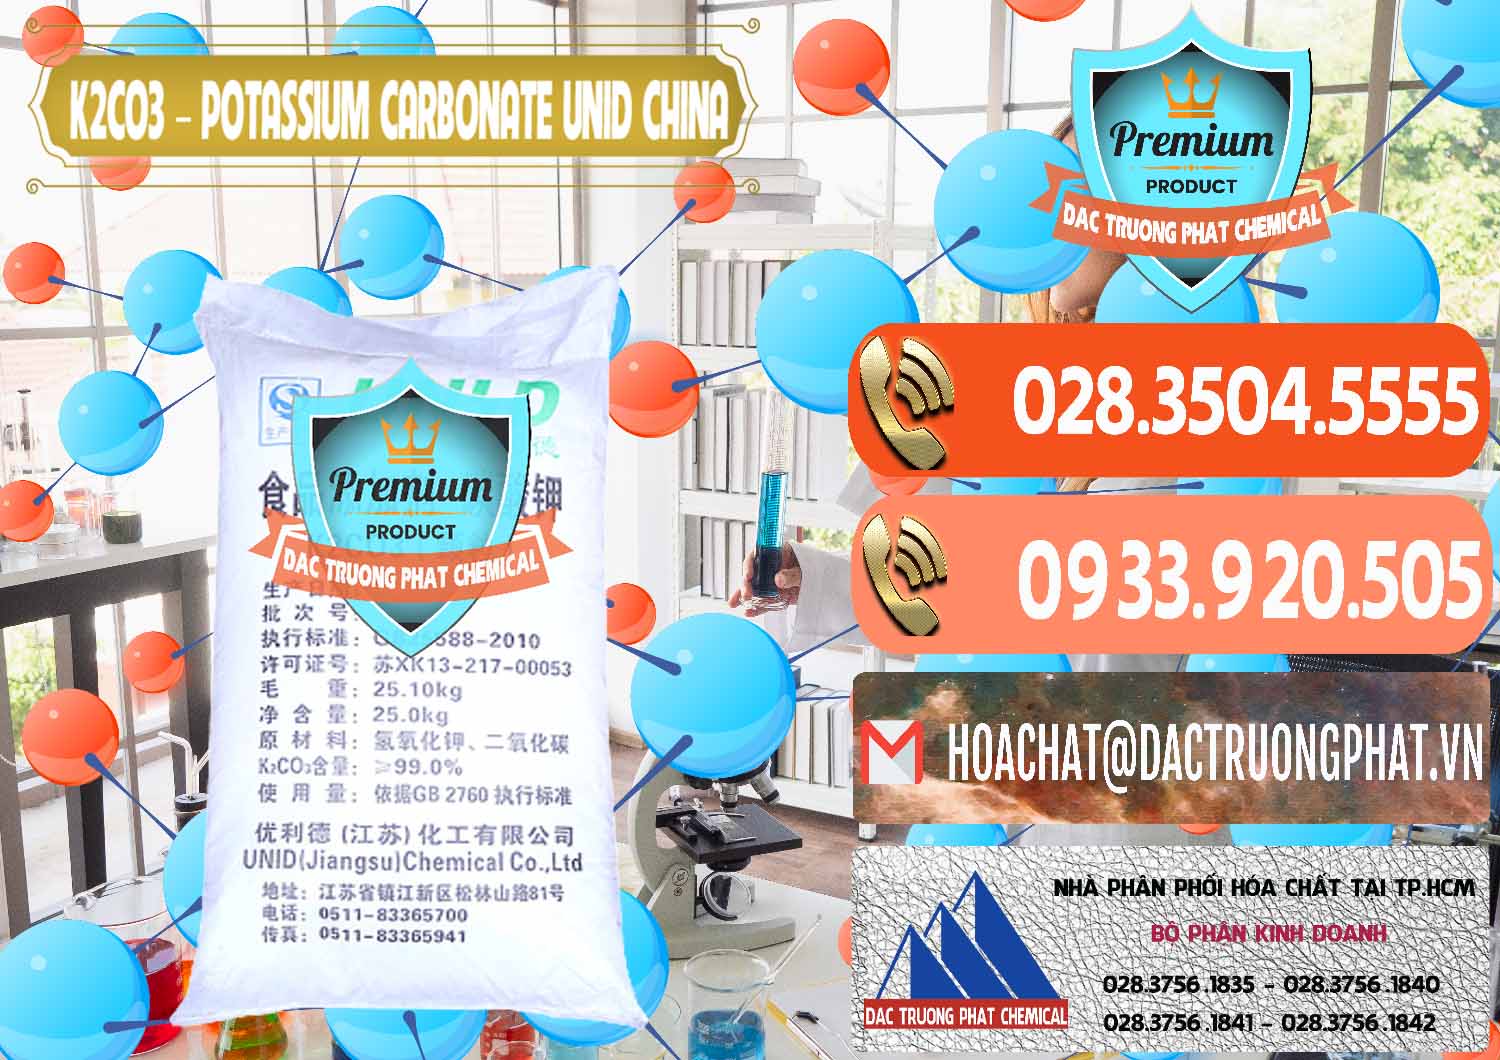 Cty chuyên cung cấp ( bán ) K2Co3 – Potassium Carbonate UNID Trung Quốc China - 0475 - Công ty cung ứng ( phân phối ) hóa chất tại TP.HCM - hoachatmientay.com